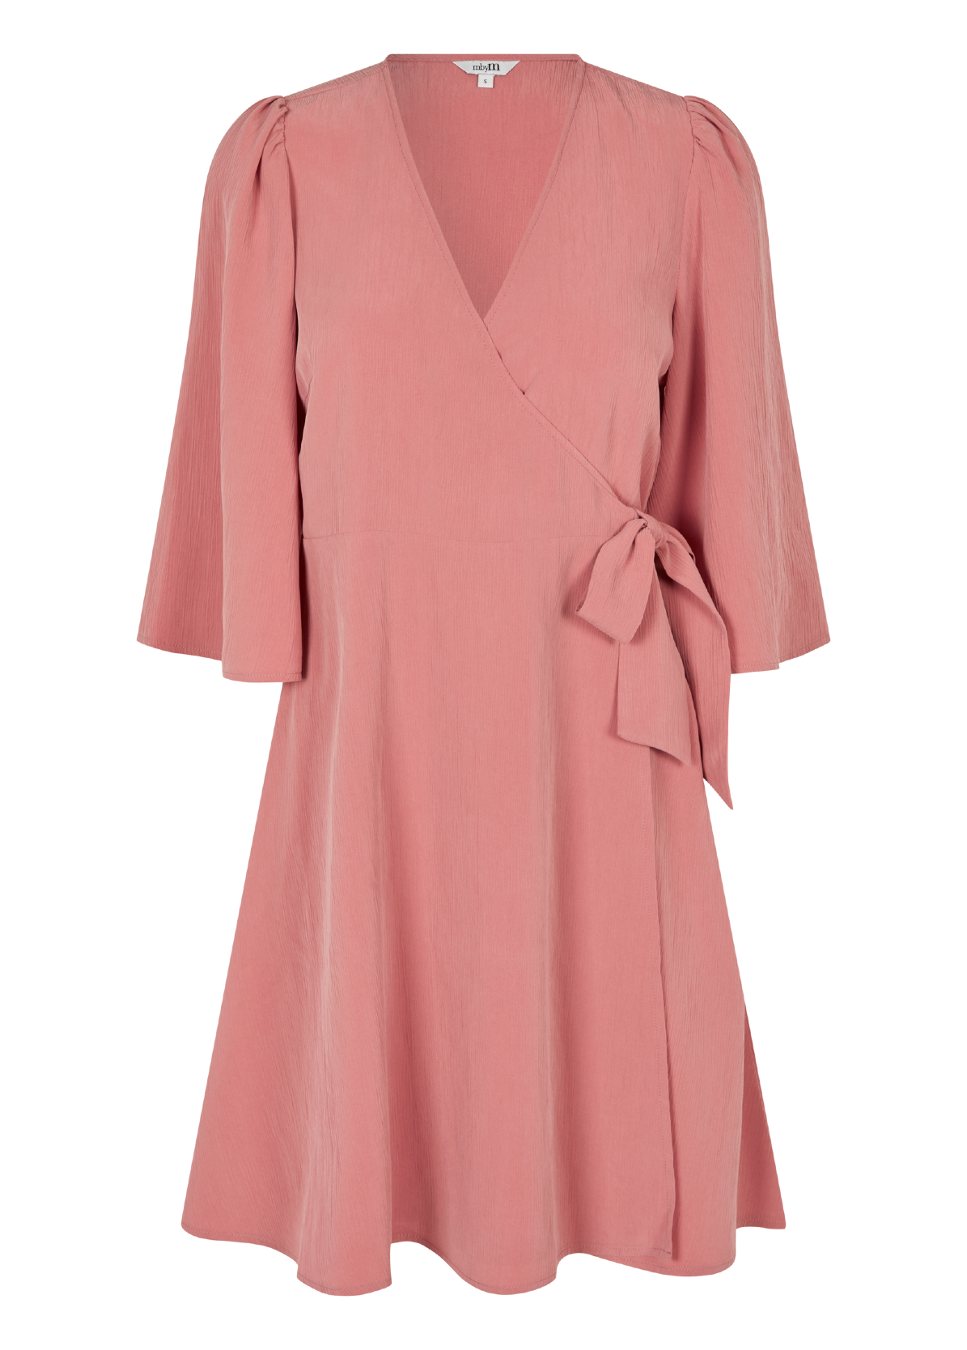 Roze midi-jurk Melika van het merk mbyM. De Slate Rose midi-jurk heeft korte, wijde mouwen en een v-hals. De Melika jurk heeft een elastische tailleband op de rug waardoor deze mooi getailleerd valt. De roze jurk is gemaakt van het duurzame modal. Shop de nieuwe collectie jurken, roze jurken, mbyM zomerjurken.